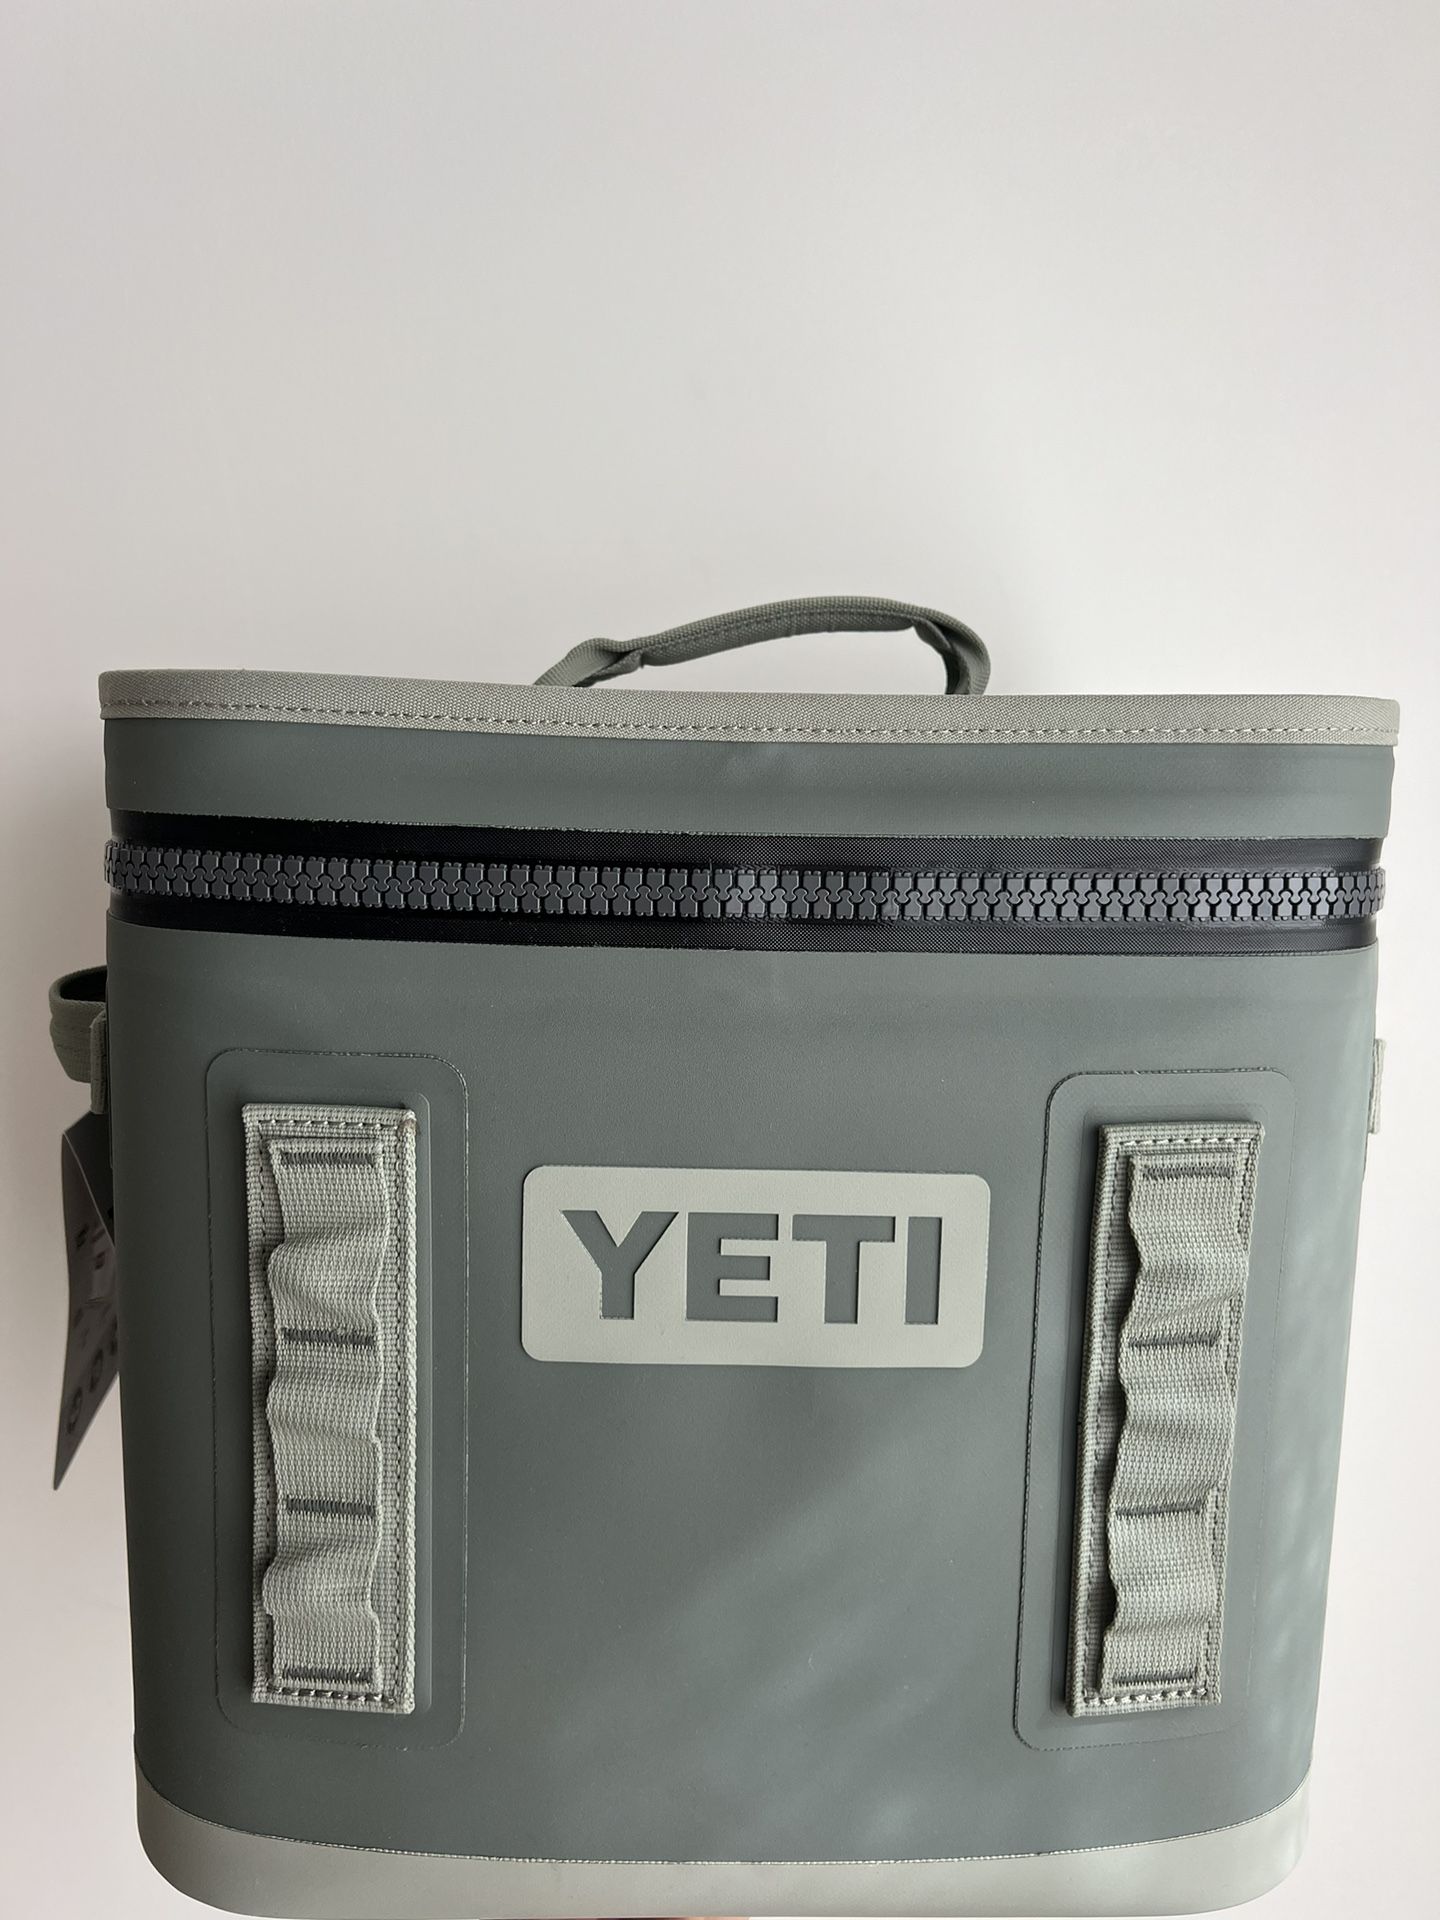 YETI 12 Soft cooler Brand New